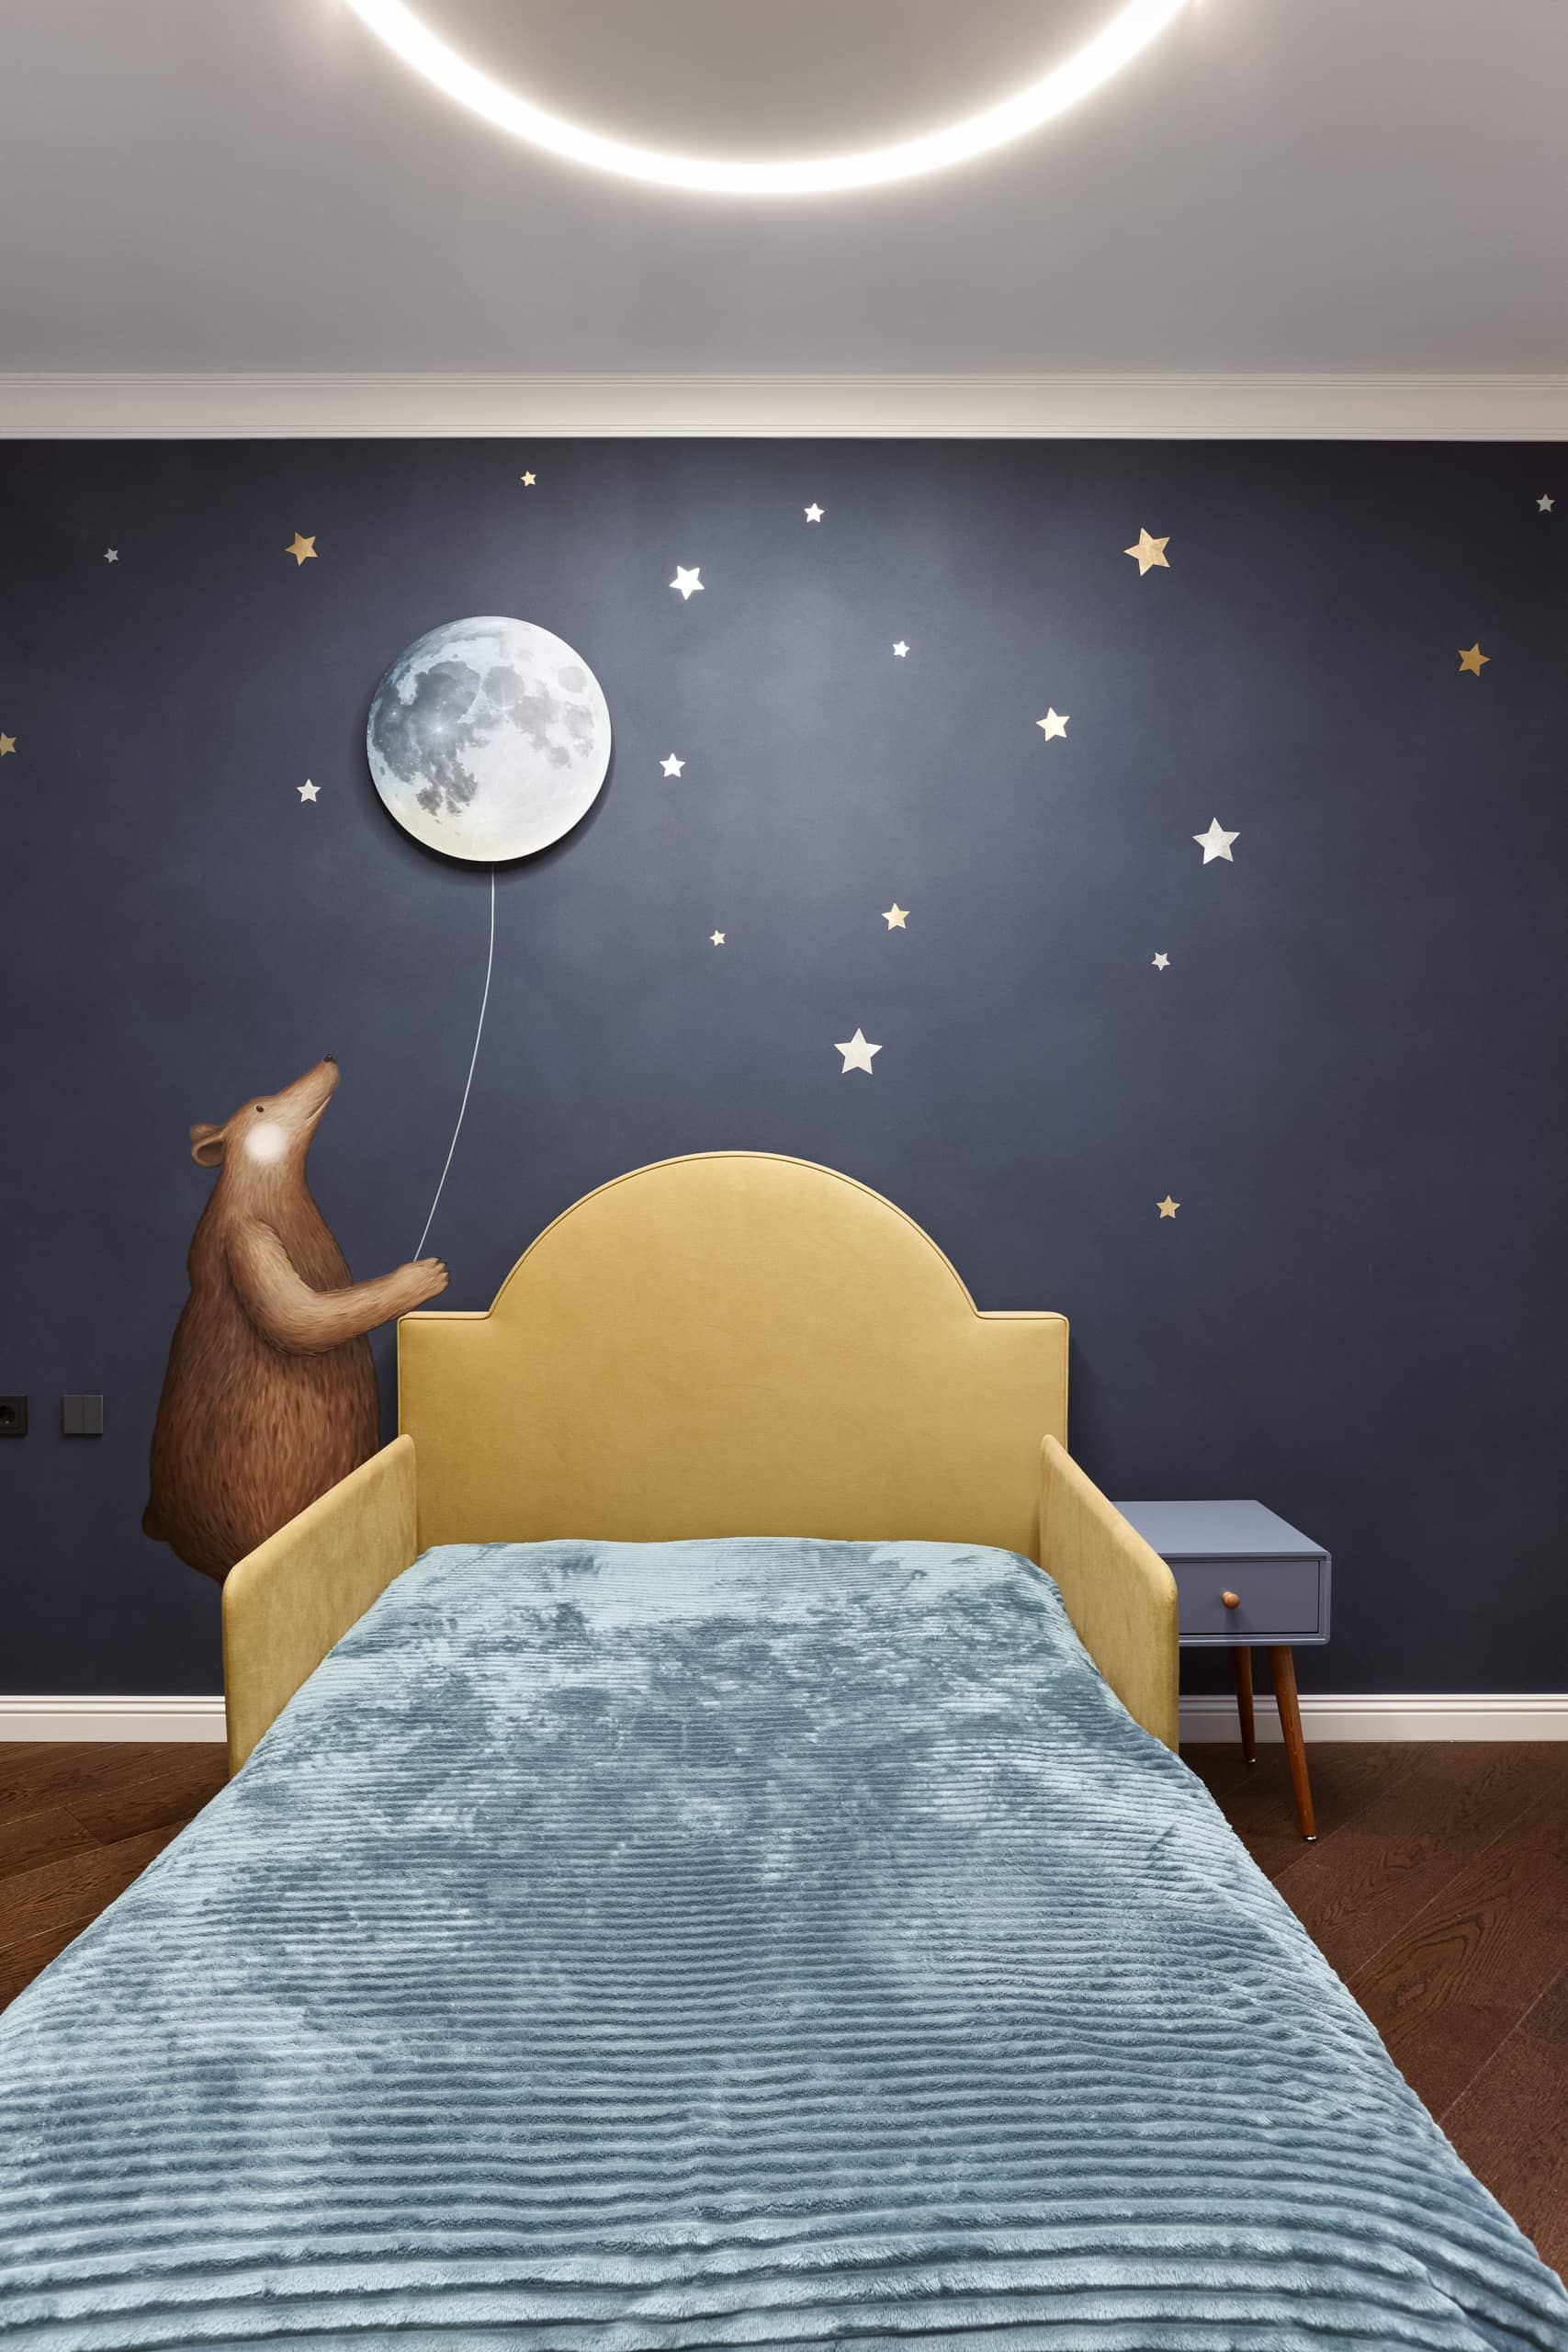 Вручную нарисованный мишка на фоне звёздного неба, с настенным светильником-луной